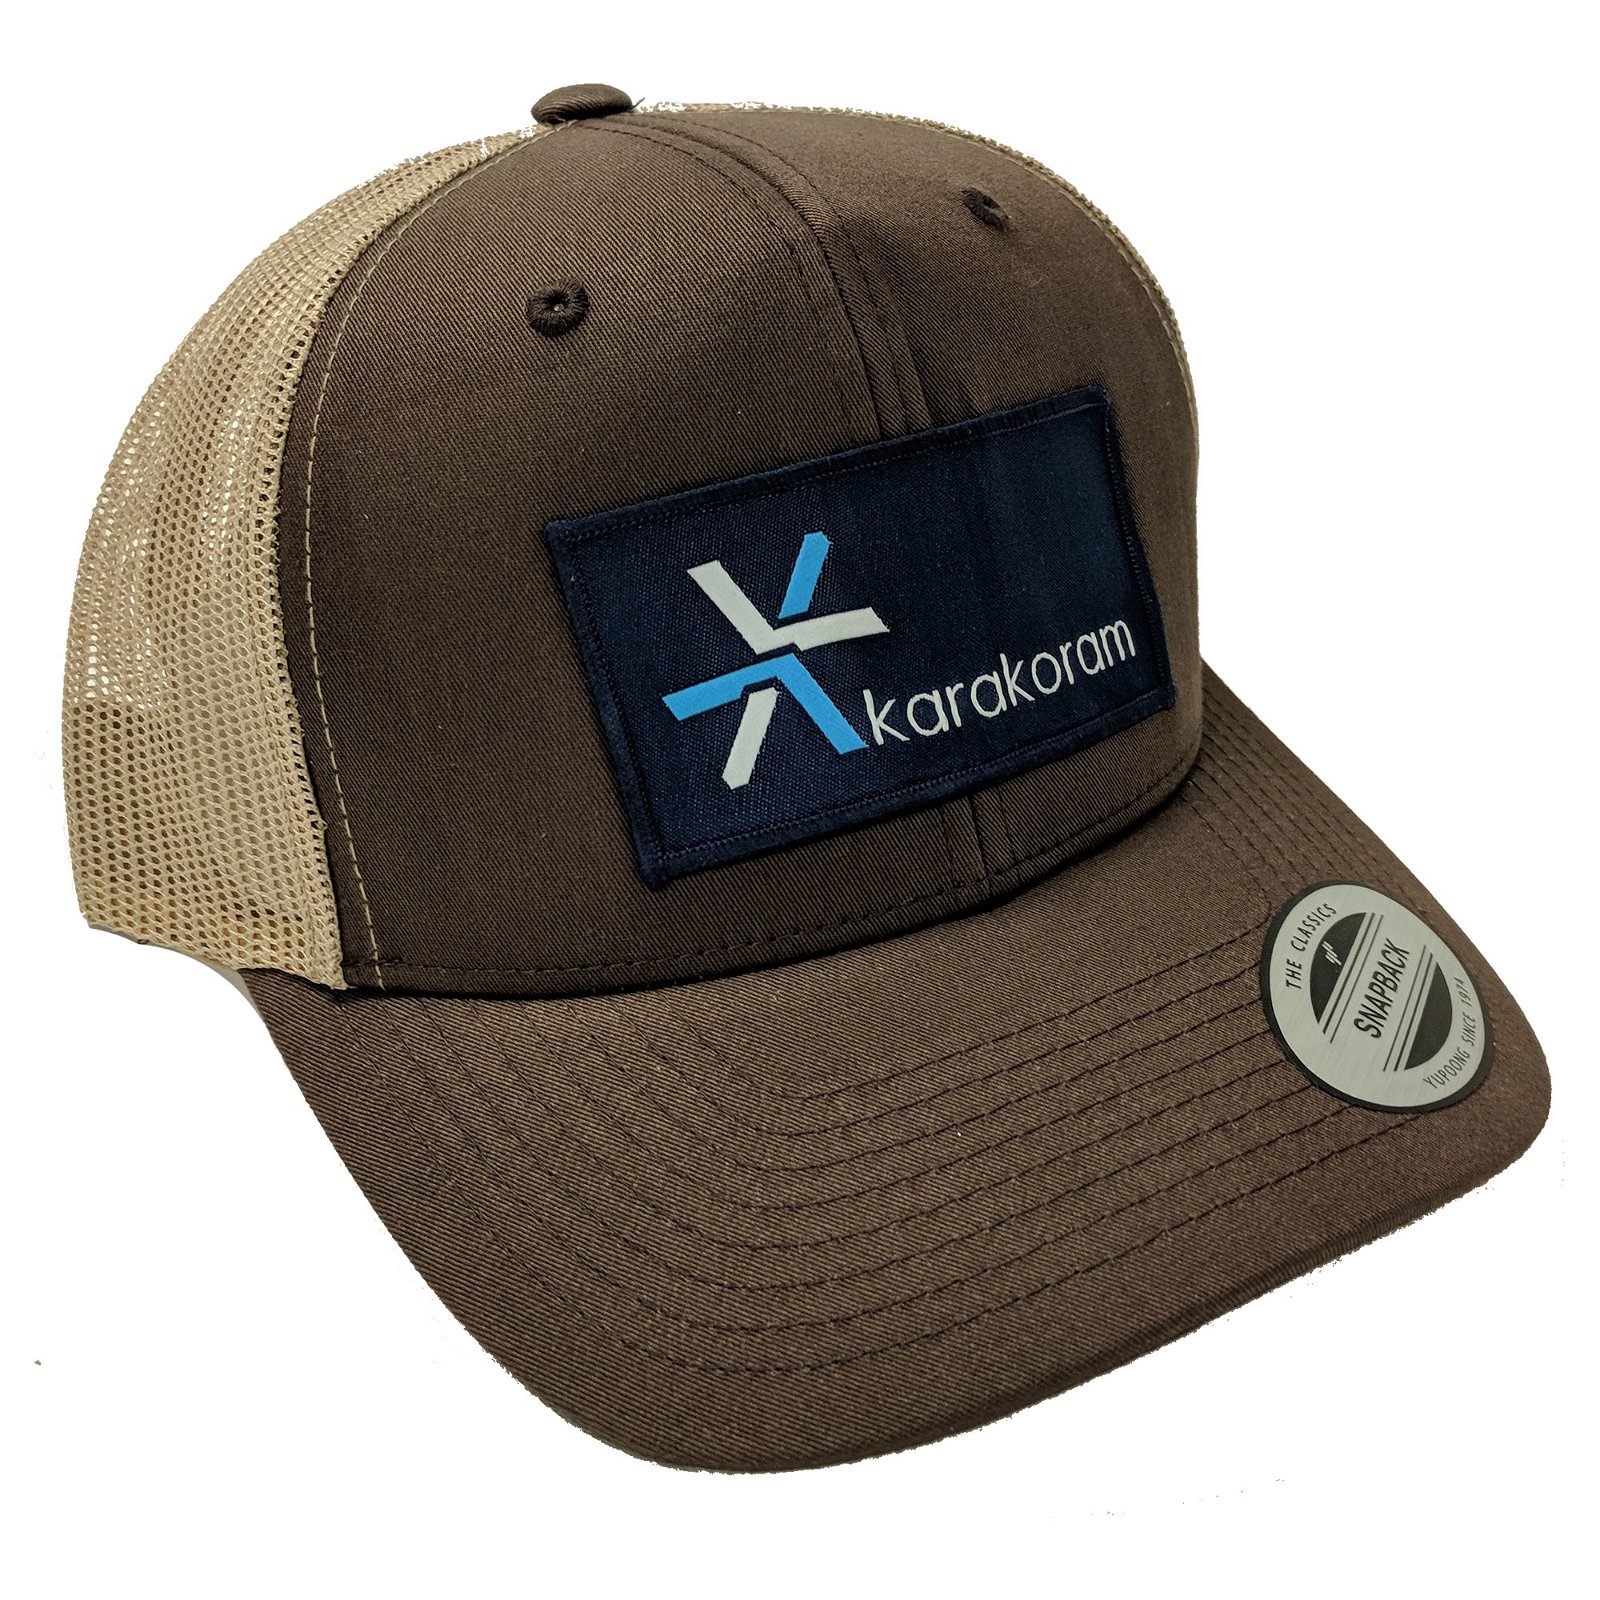 Karakoram Trucker Hat